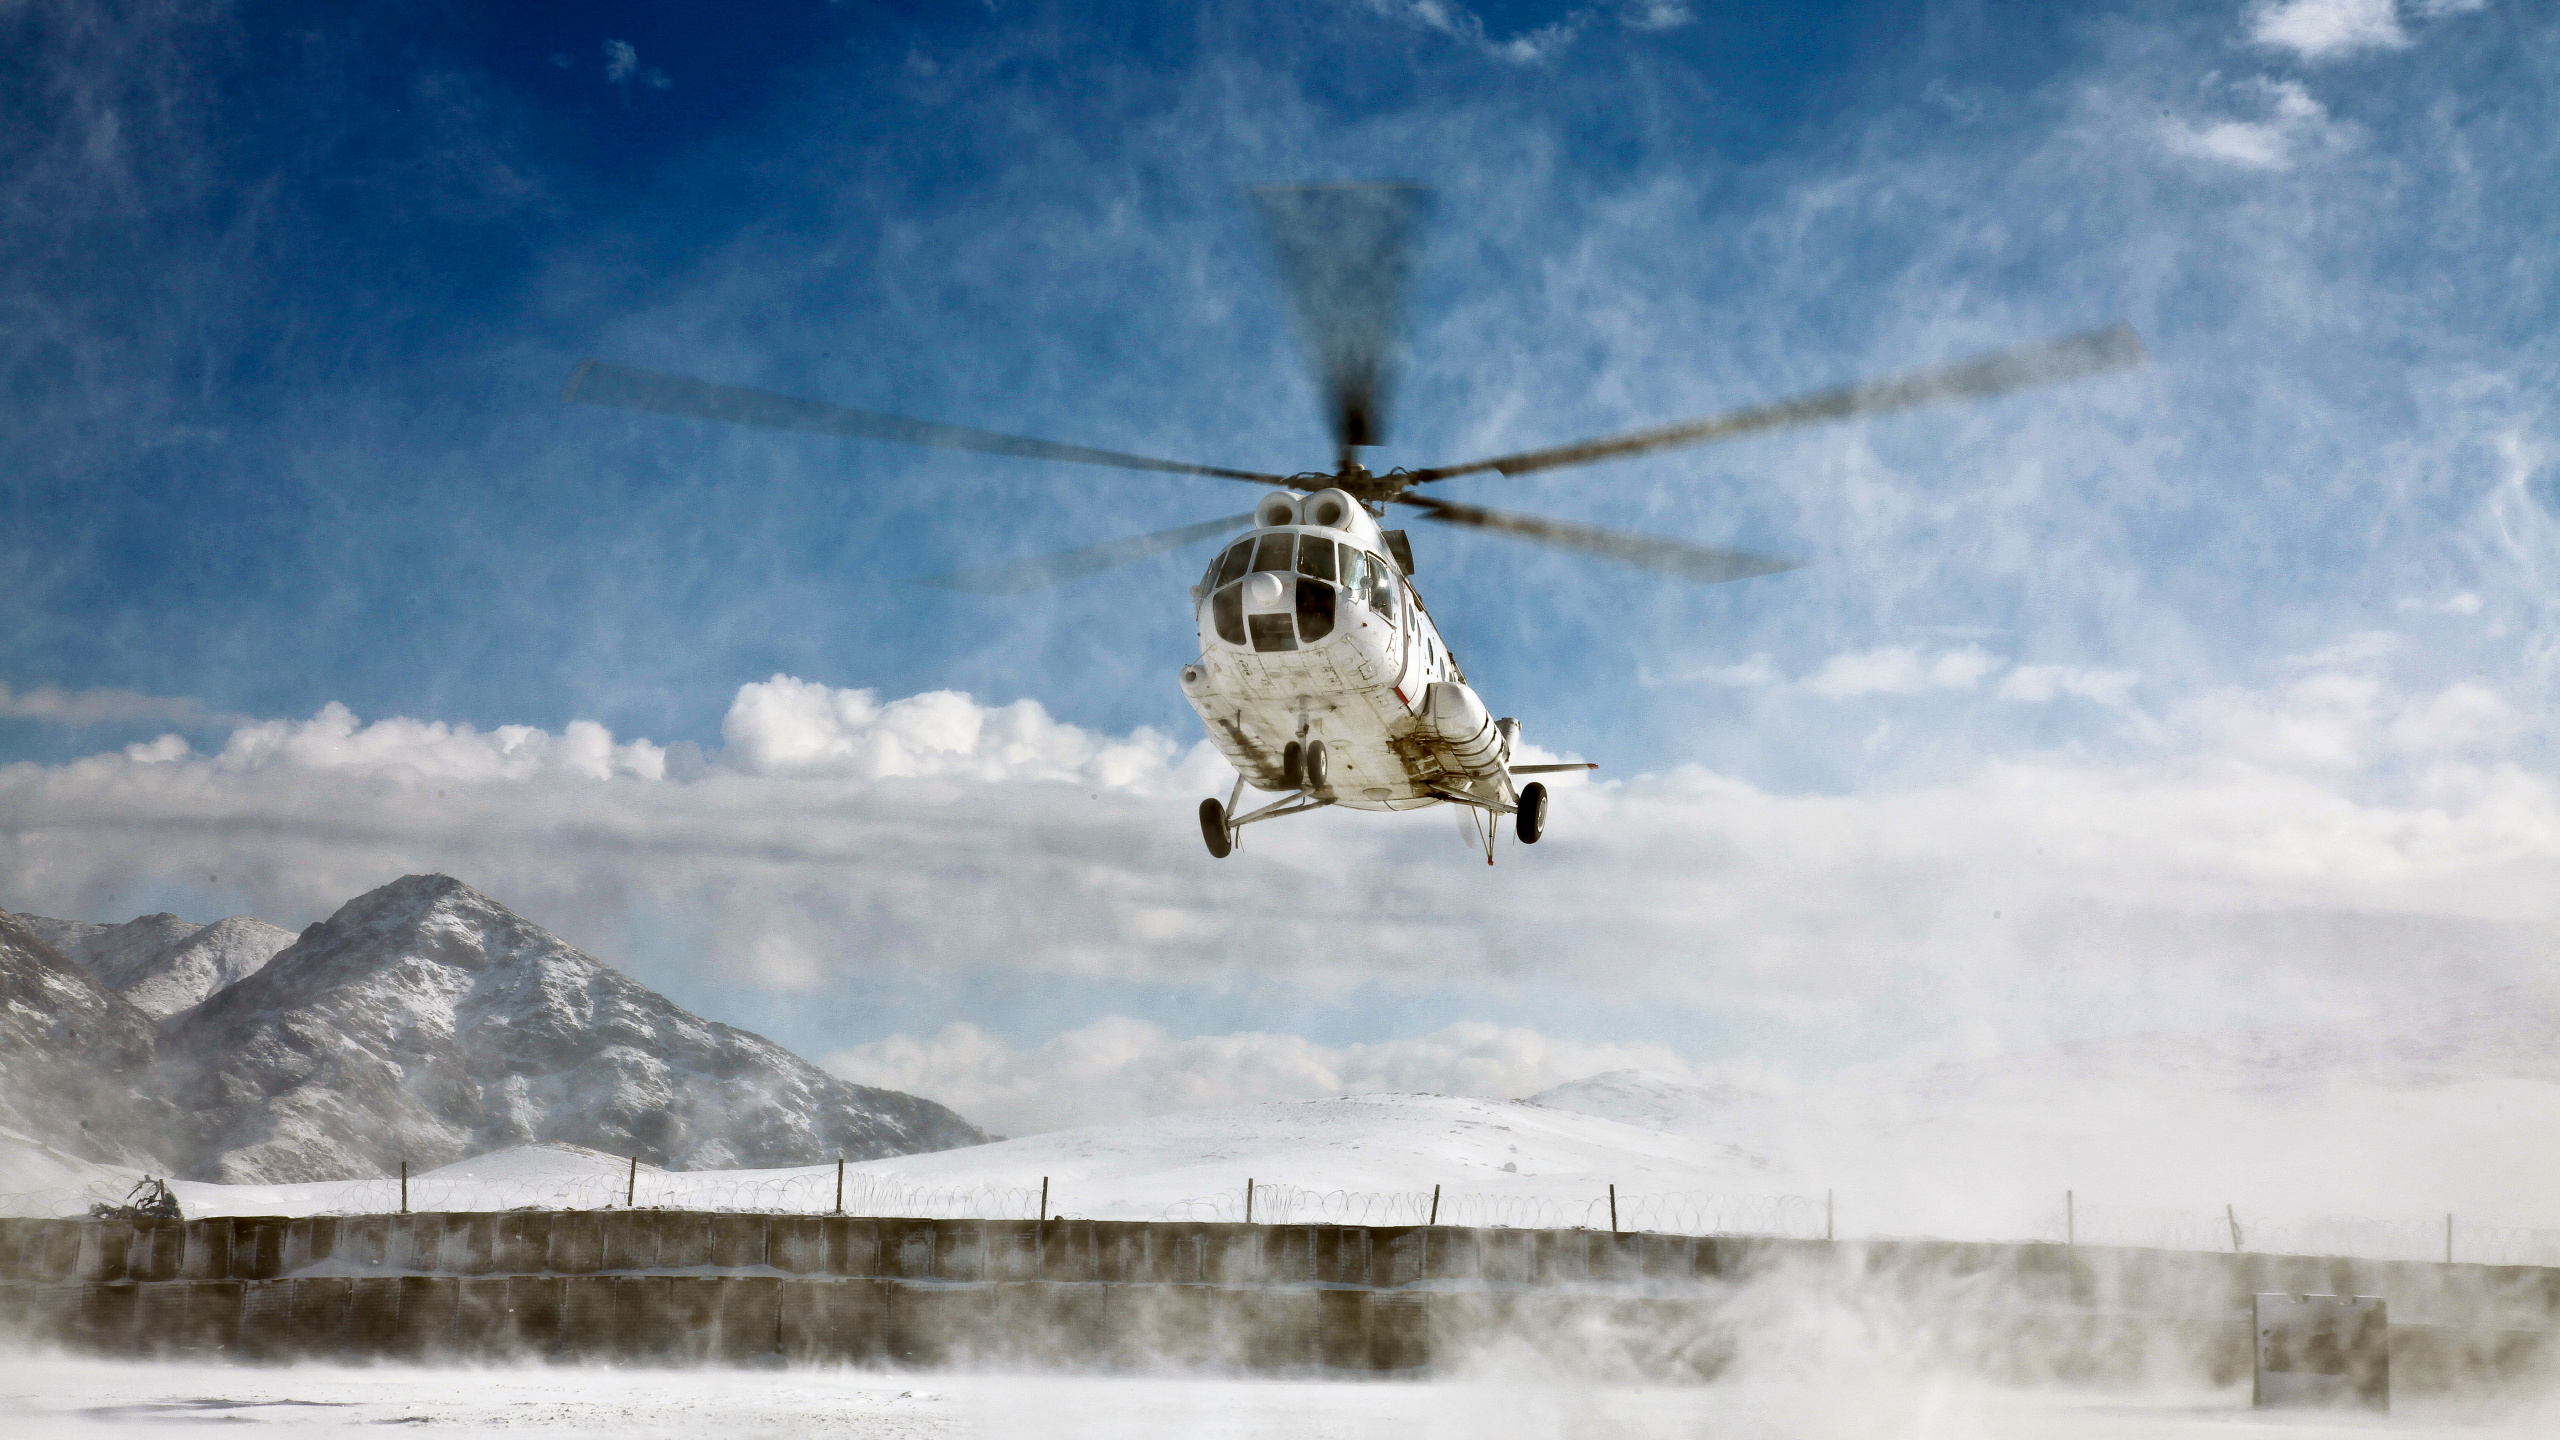 直升机, 旋翼飞机, 直升机转子的, 军用直升机, 航空 壁纸 2560x1440 允许